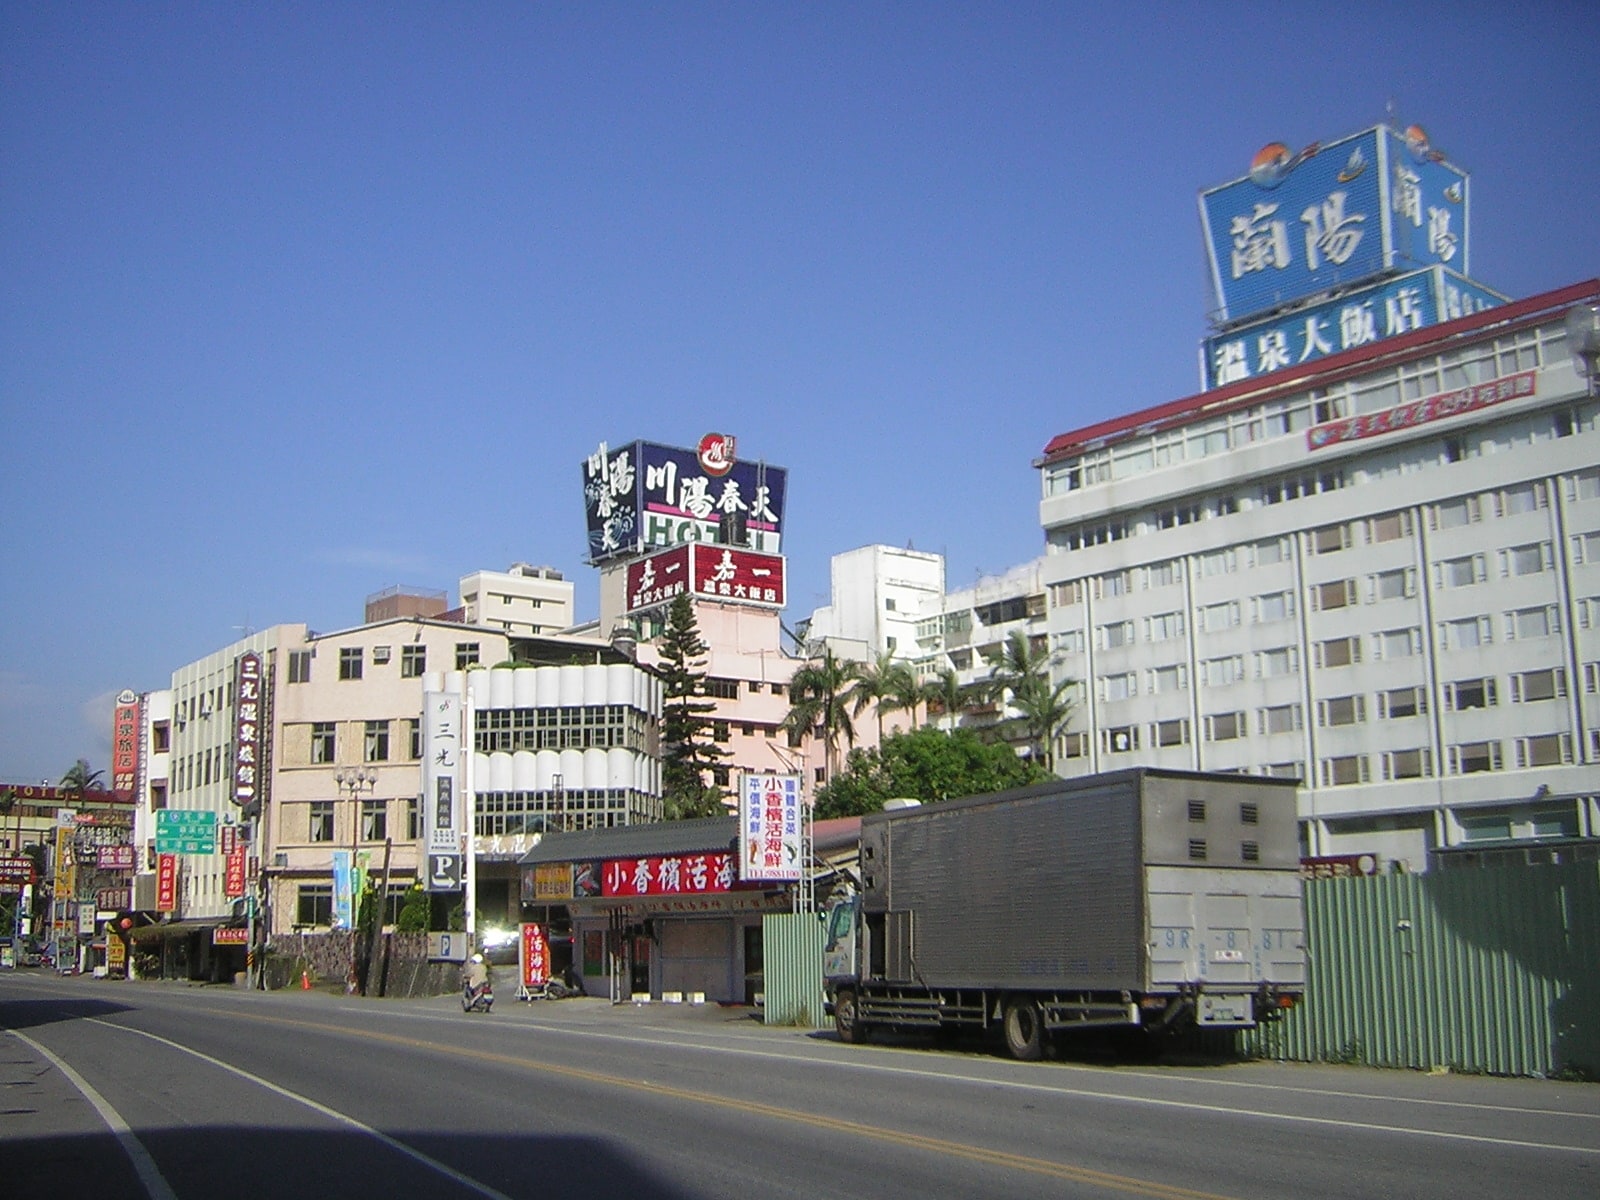 Jiaoxi, Taiwan